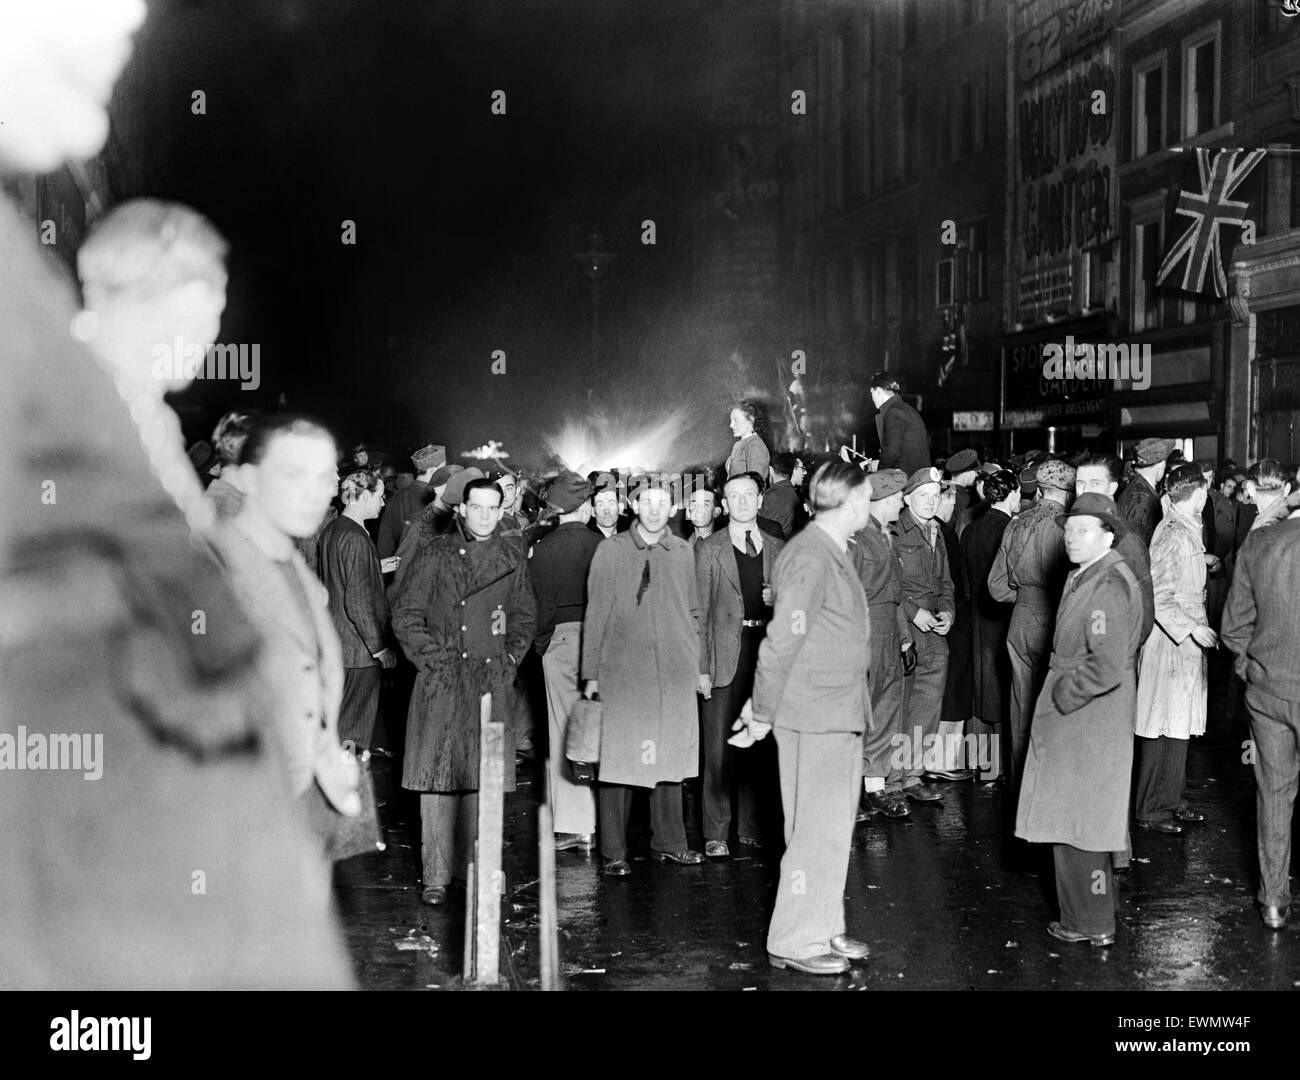 VE Day Feierlichkeiten in London am Ende des zweiten Weltkriegs.  Riesige Menschenmengen versammelten sich um Piccadilly Circus während der Feierlichkeiten.  8. Mai 1945. Stockfoto